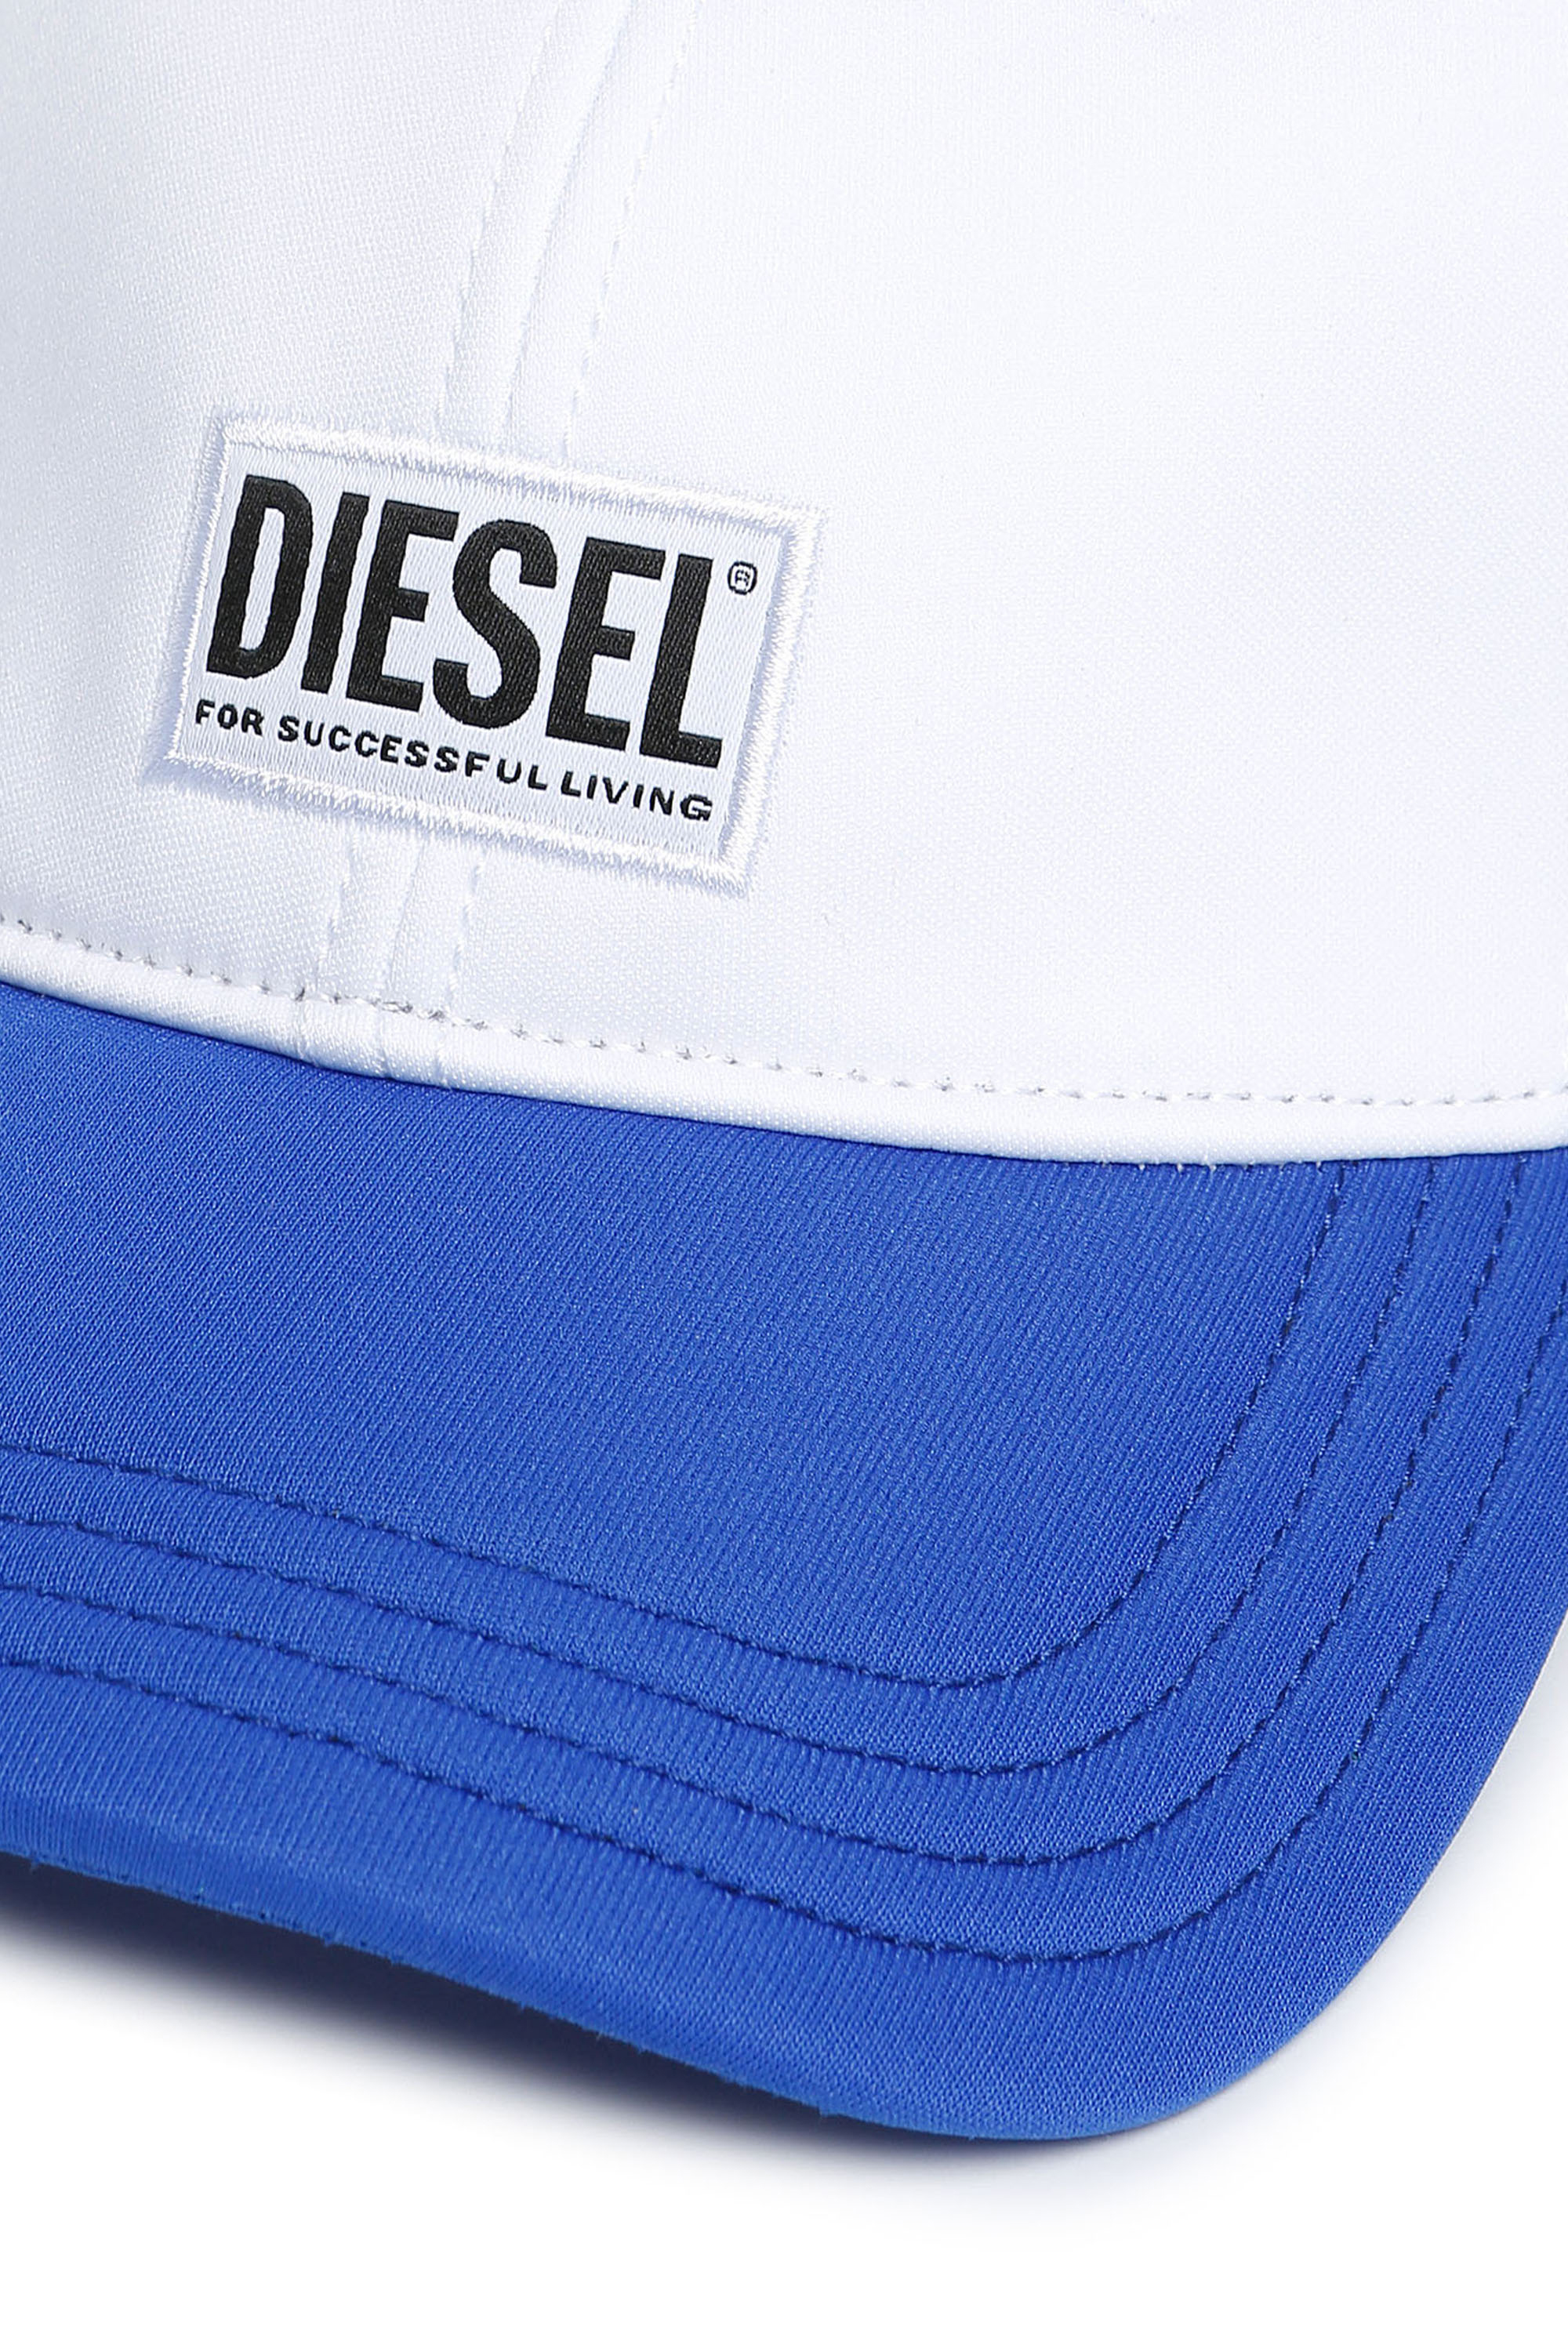 Diesel - FDURBO, White/Blue - Image 3